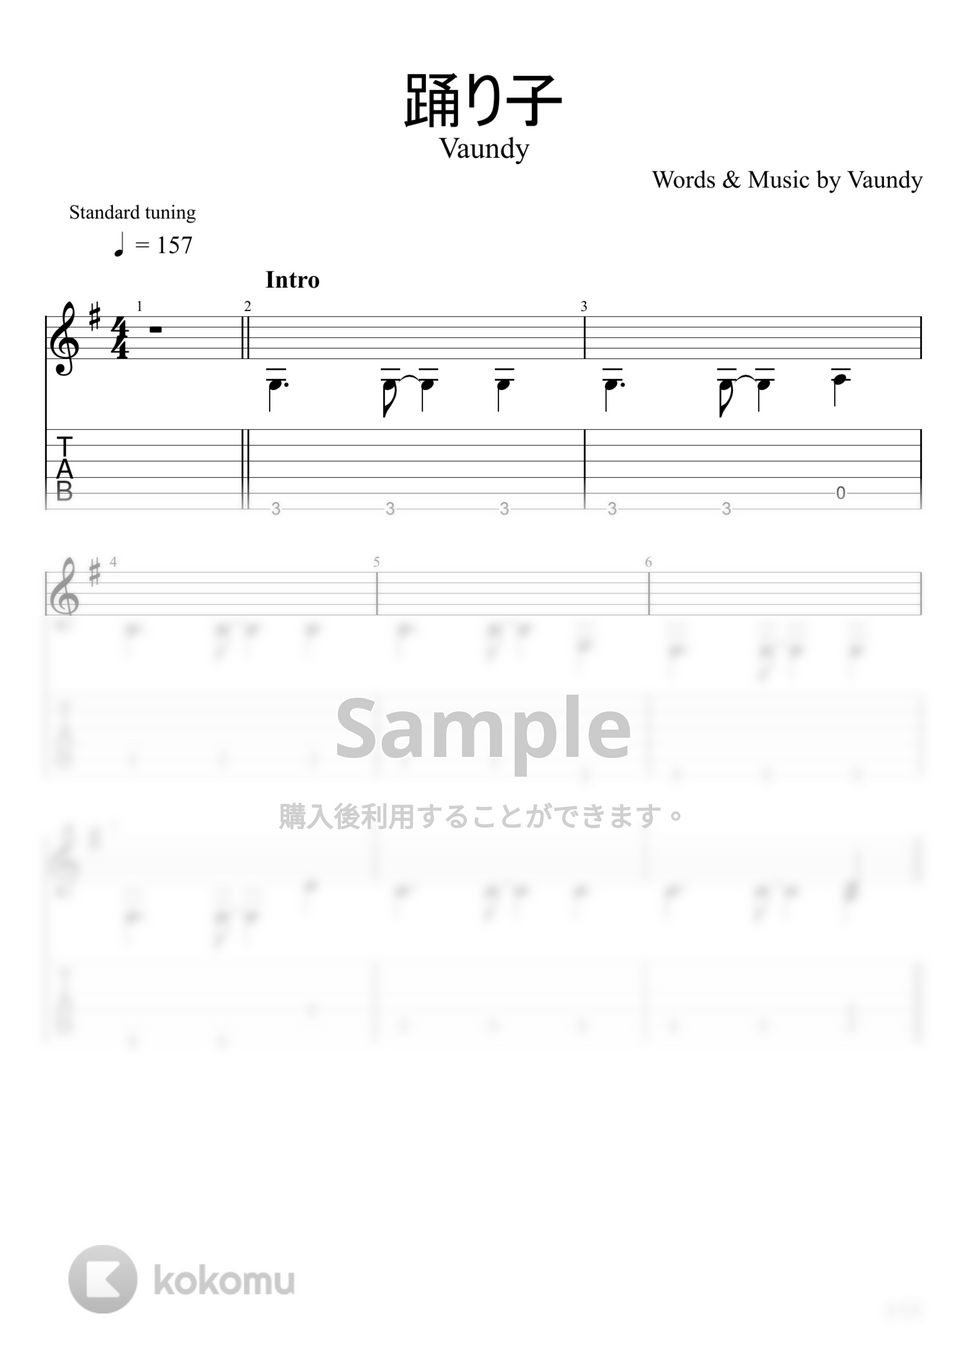 Vaundy - 踊り子 (ソロギター) by u3danchou